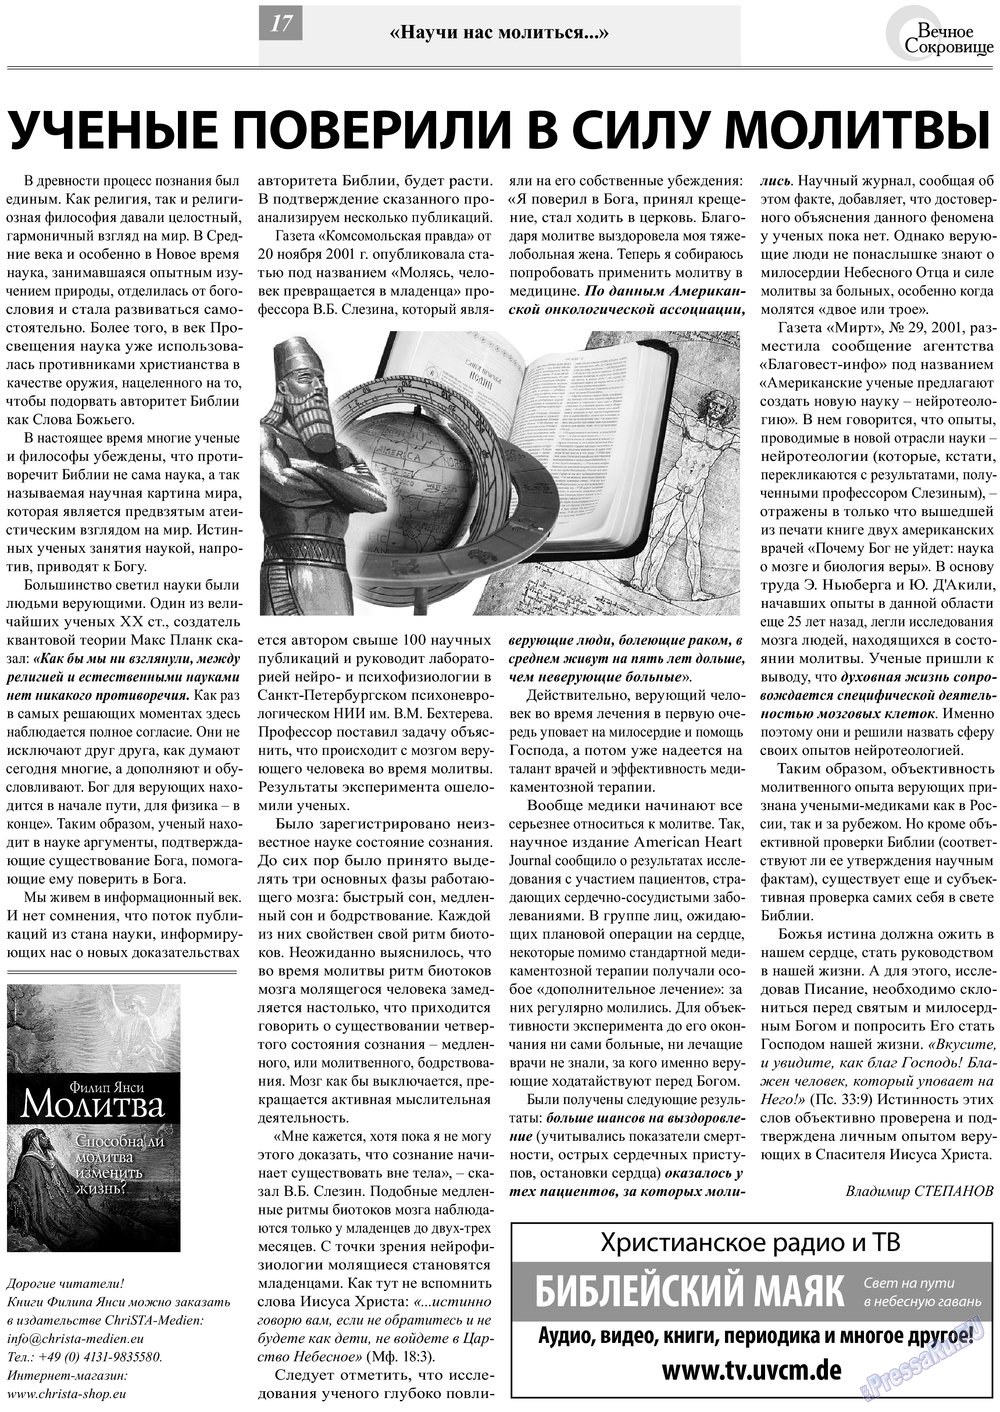 Вечное сокровище (газета). 2013 год, номер 2, стр. 17